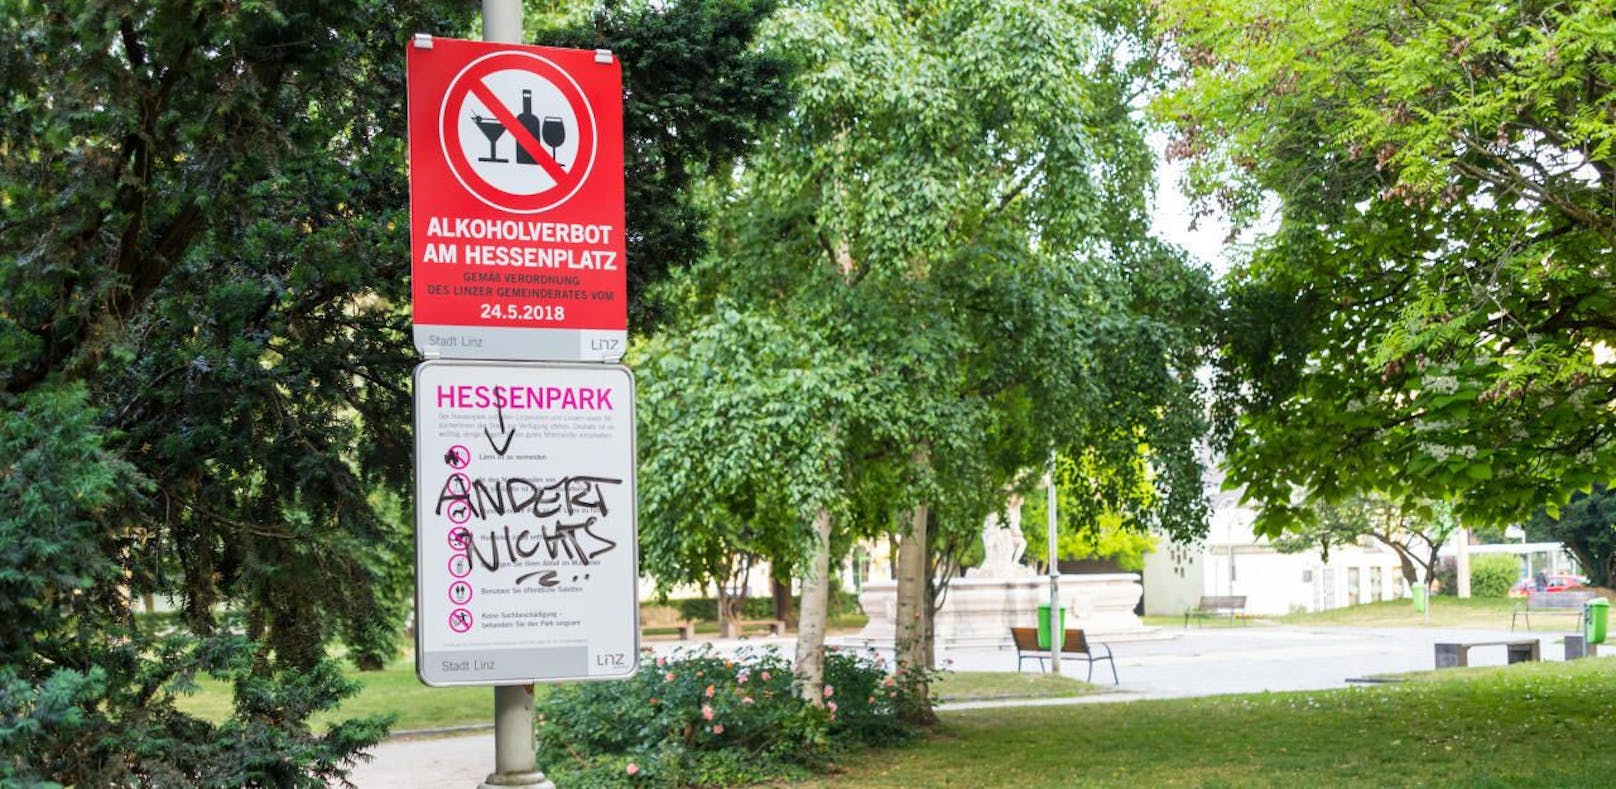 Wird das Alkohol-Verbot im Hessenpark auch auf andere Parks ausgeweitet? Denkbar, aber noch ist es zu früh über weitere Verordnungen nachzudenken, so Sicherheitsreferent Detlef Wimmer (FPÖ). 